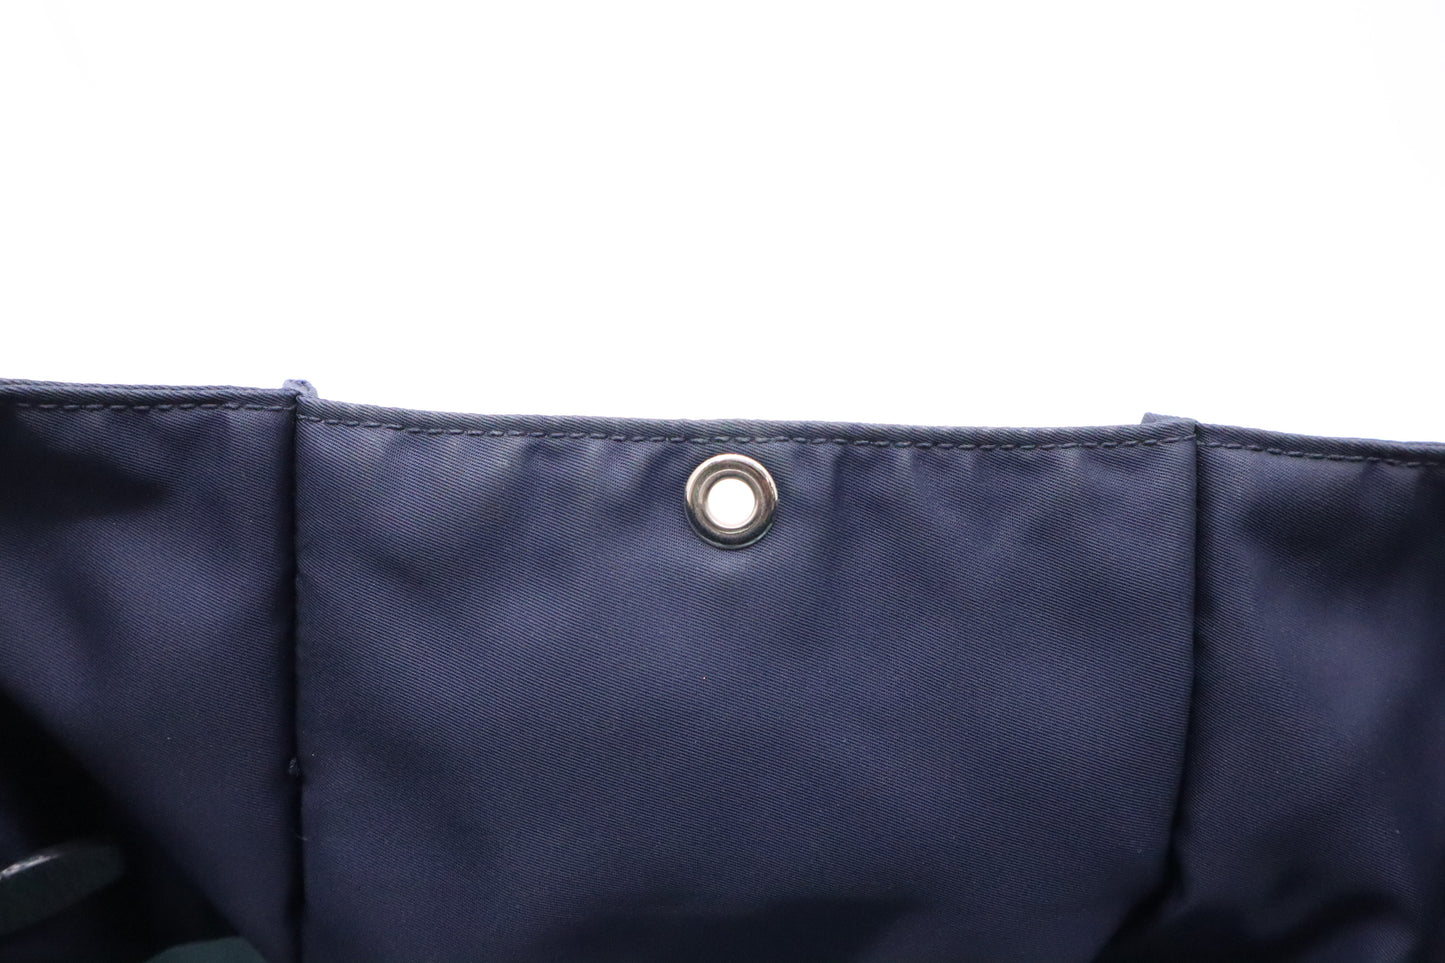 Prada Tote Bag in Navy Blue Nylon